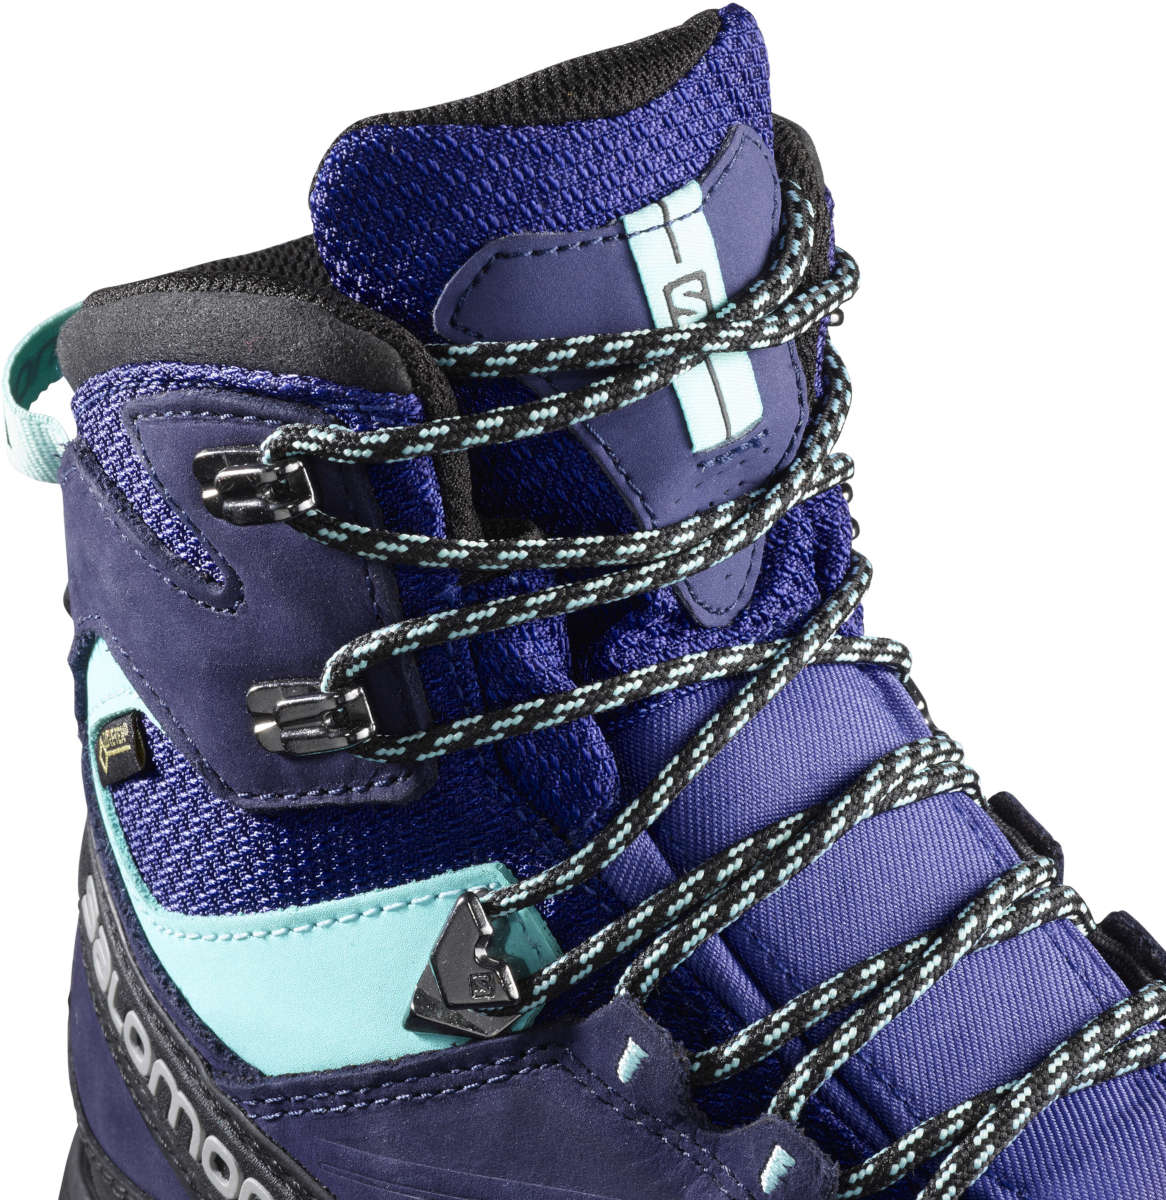 women's x alp mtn gtx hiking boots